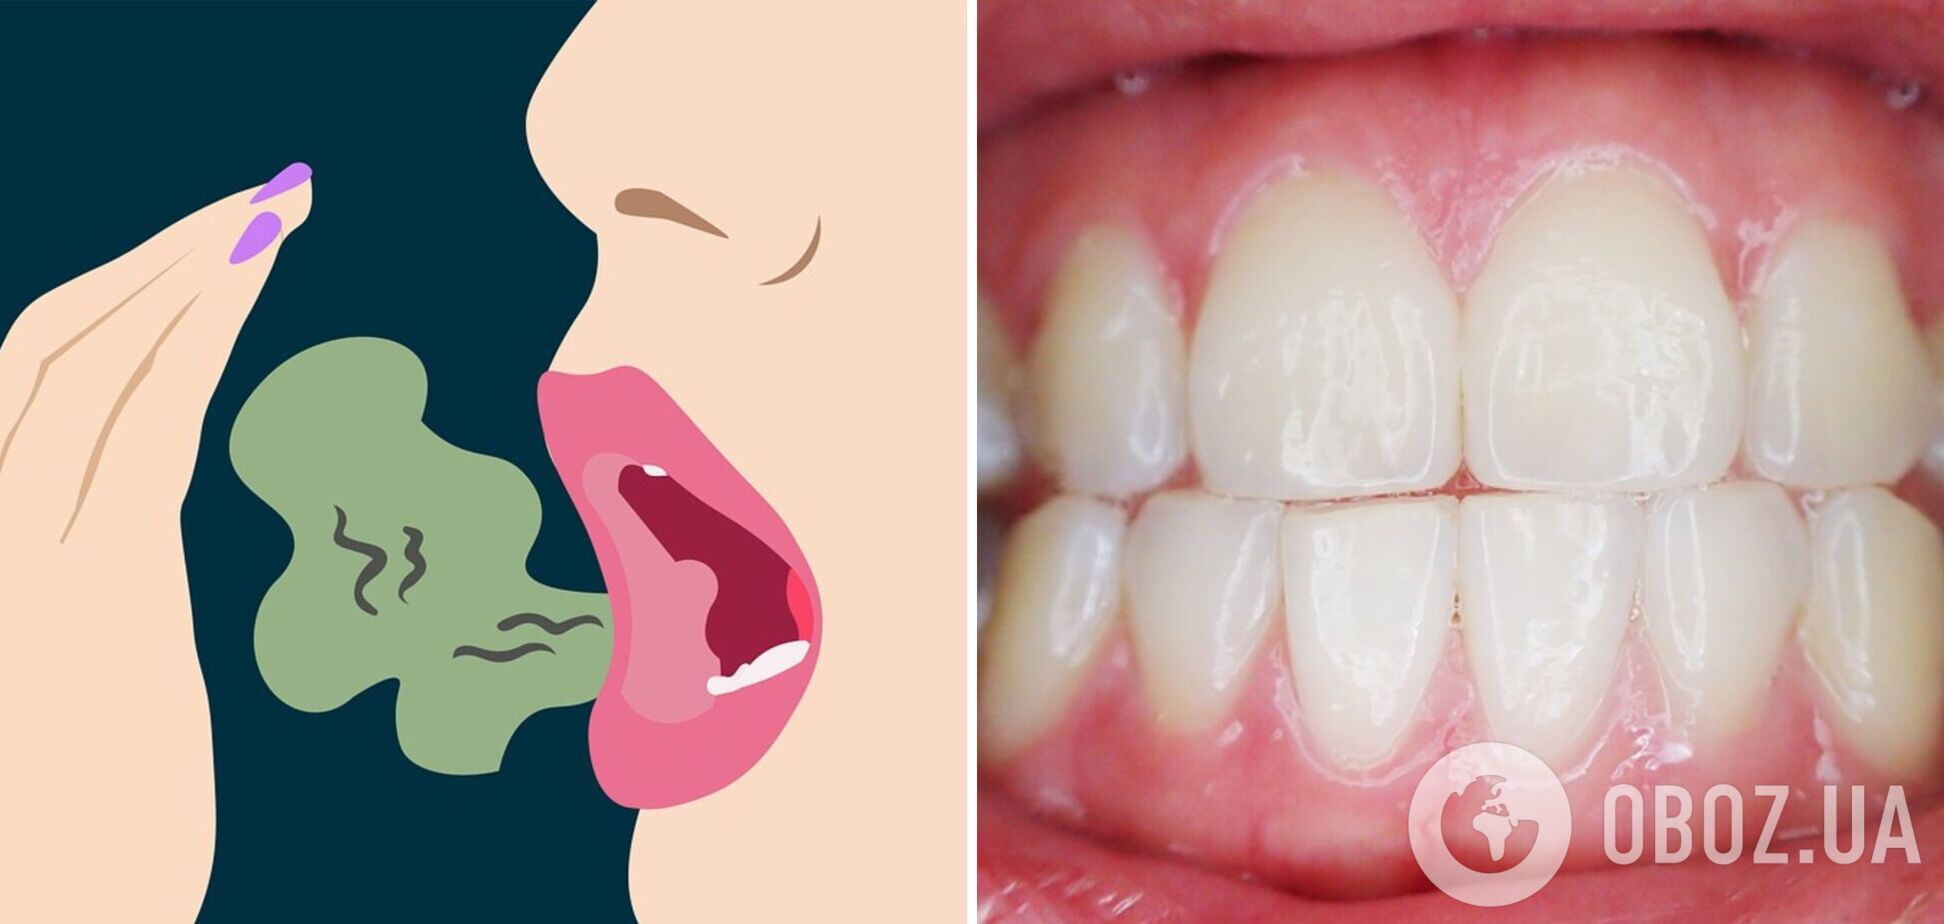 Неприятный запах изо рта: врачи назвали причины и способы борьбы